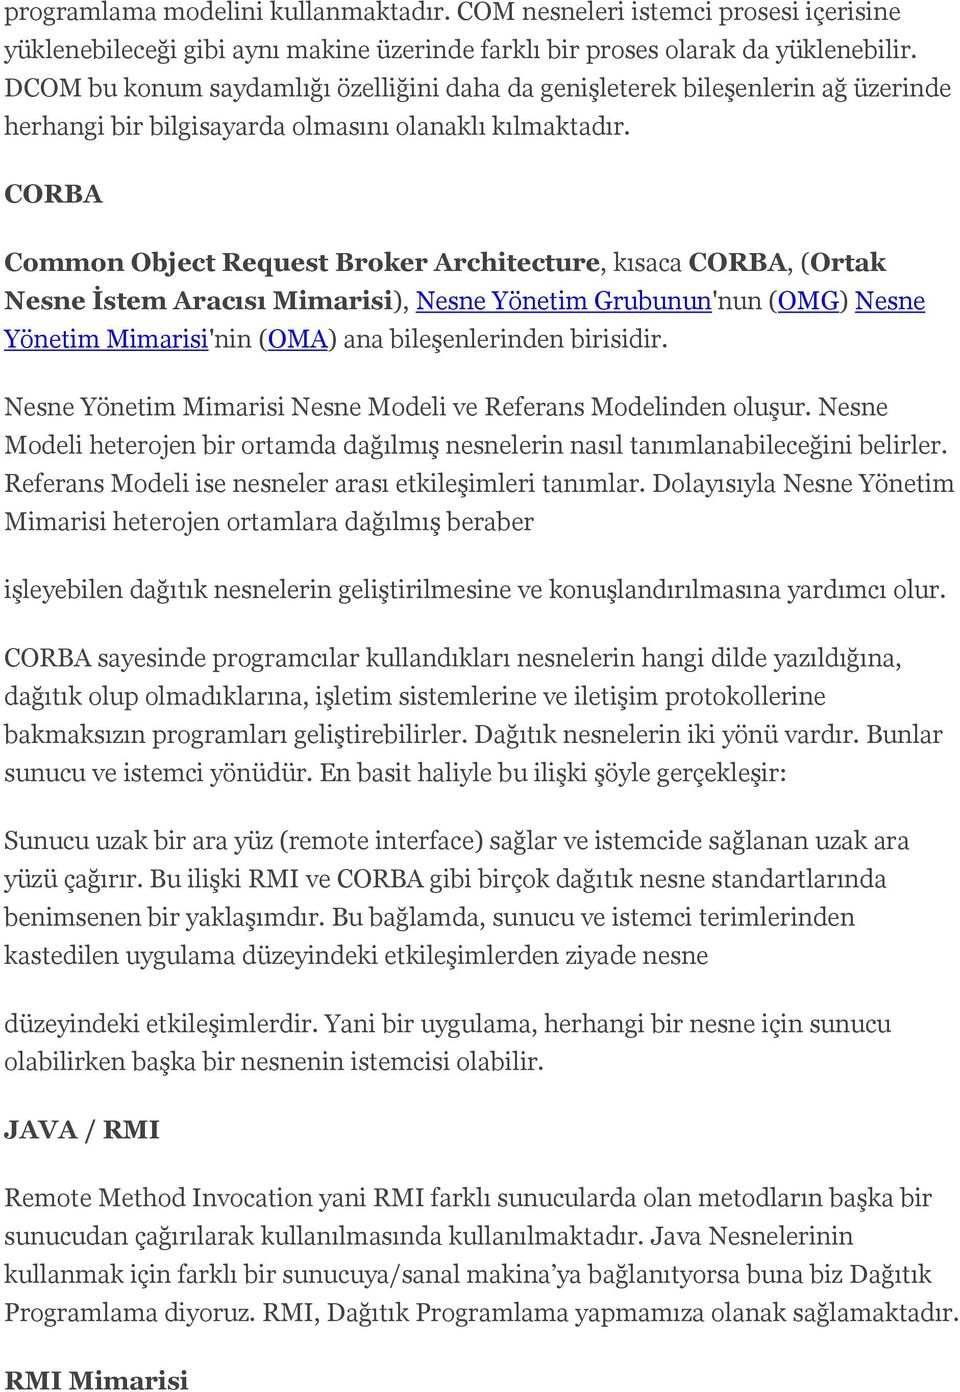 CORBA Common Object Request Broker Architecture, kısaca CORBA, (Ortak Nesne İstem Aracısı Mimarisi), Nesne Yönetim Grubunun'nun (OMG) Nesne Yönetim Mimarisi'nin (OMA) ana bileşenlerinden birisidir.